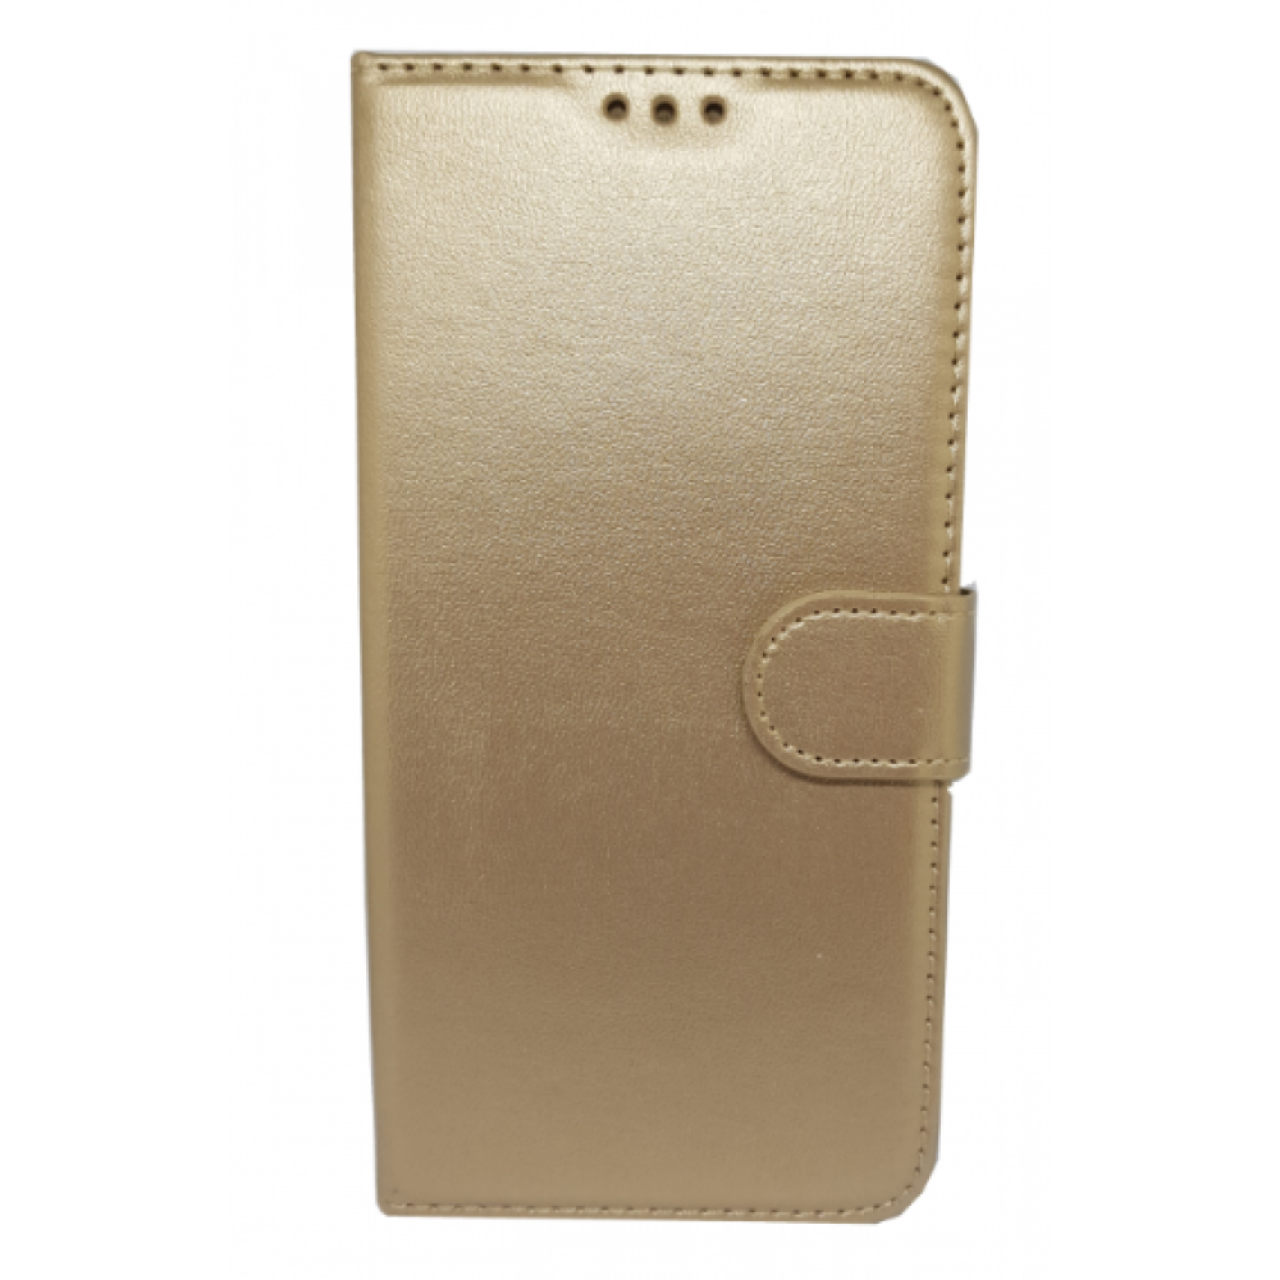 Θήκη Huawei P20 Lite PU Leather Πορτοφόλι - 4500 - Χρυσό - OEM